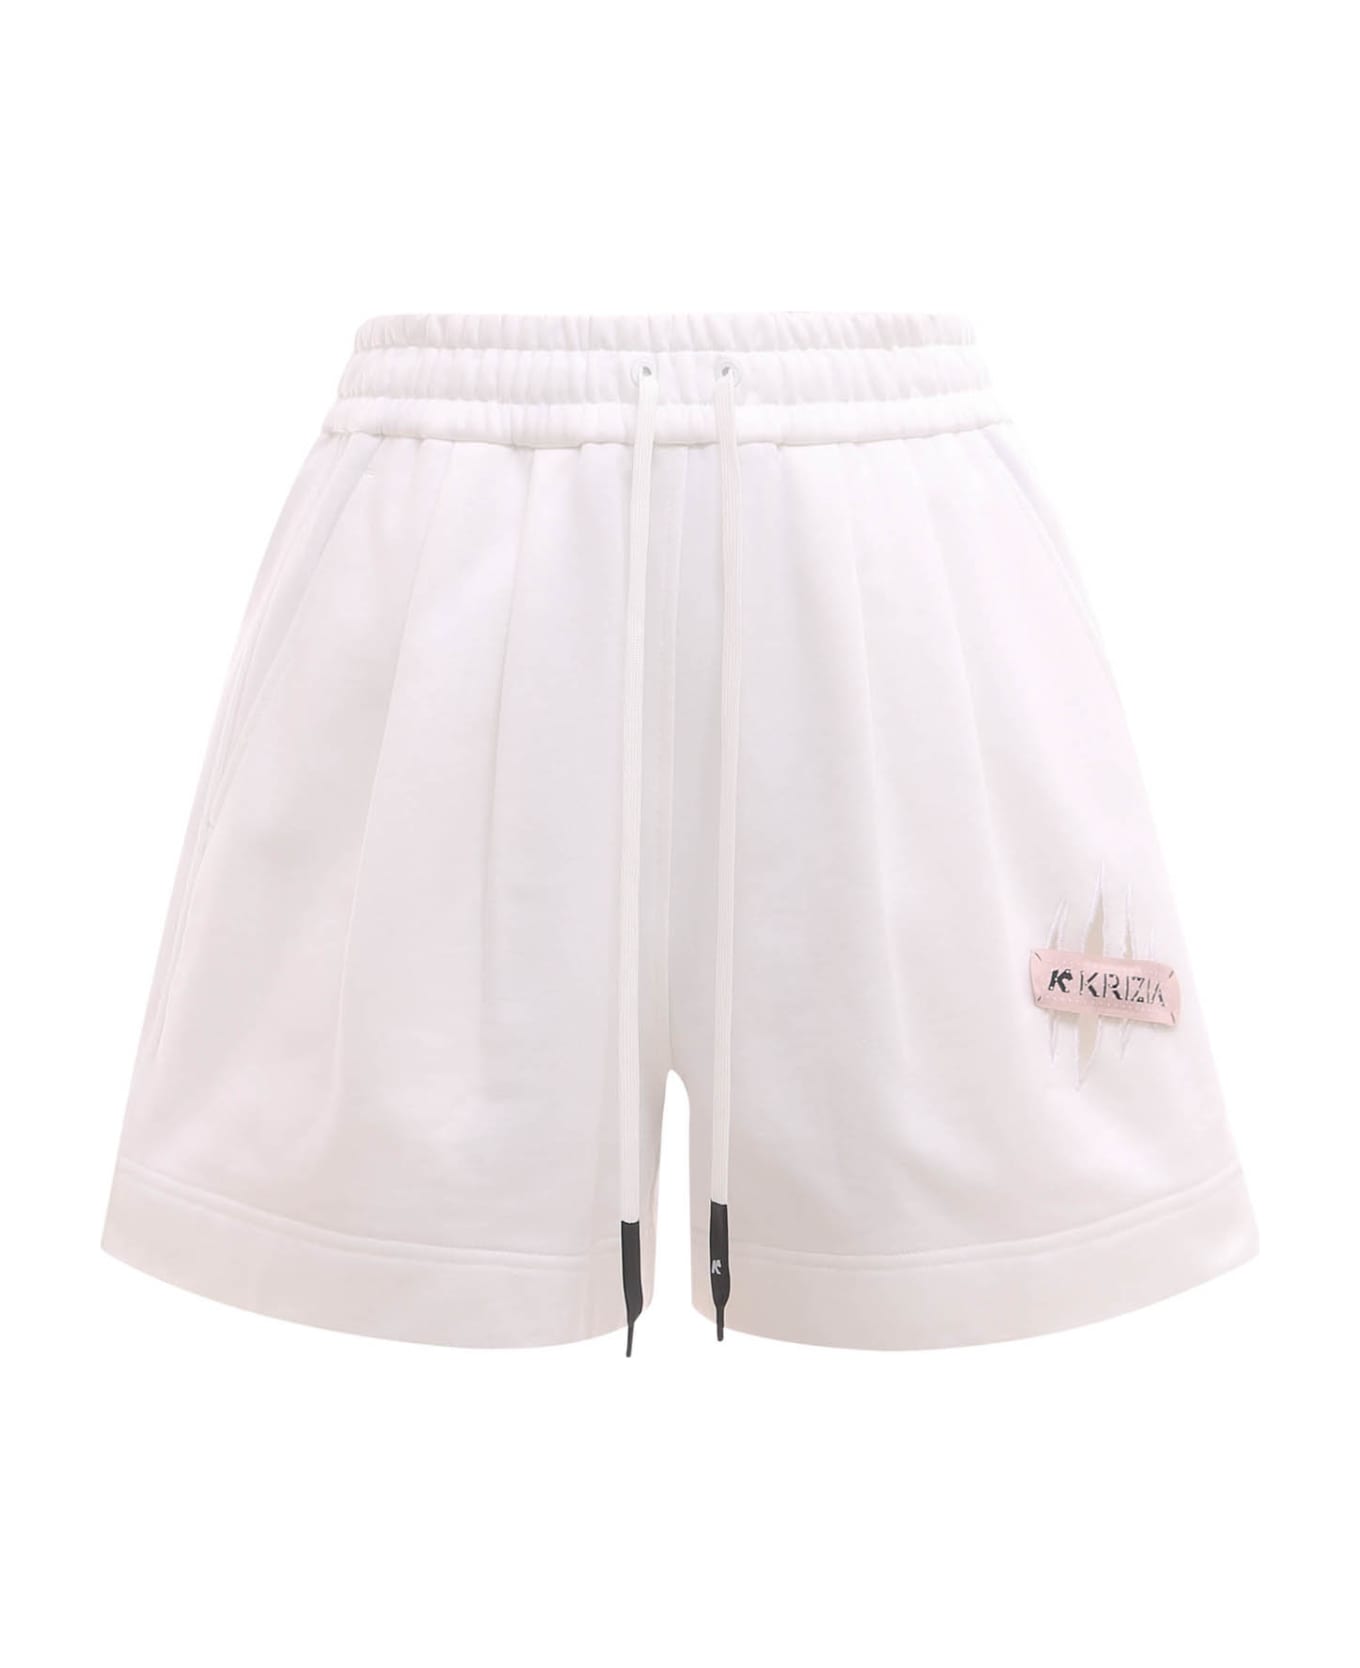 K Krizia Shorts - White